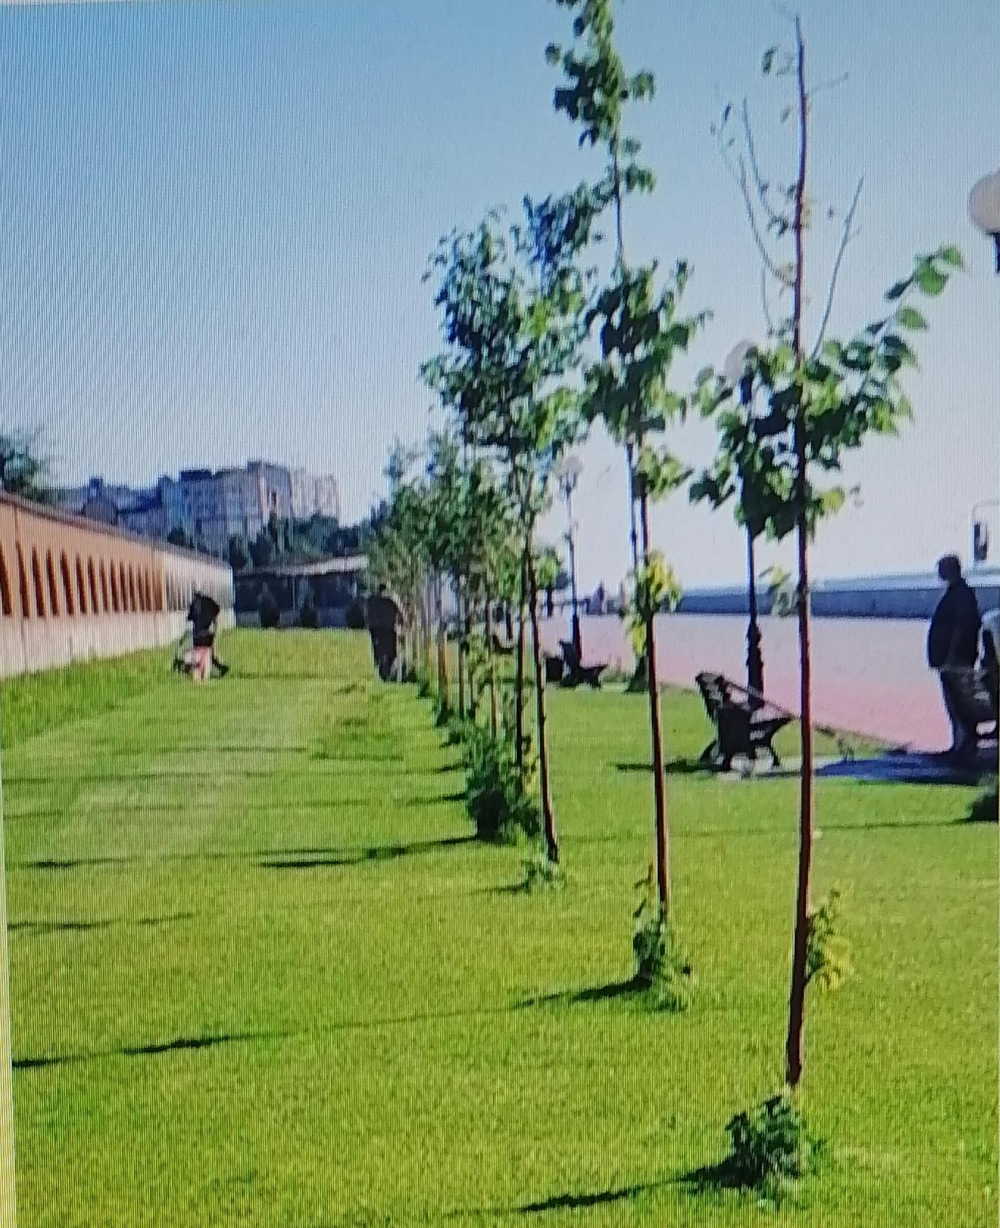 Администрация Камышина показала, как идеально она выстригла газоны у известного «дома на набережной», - камышанка